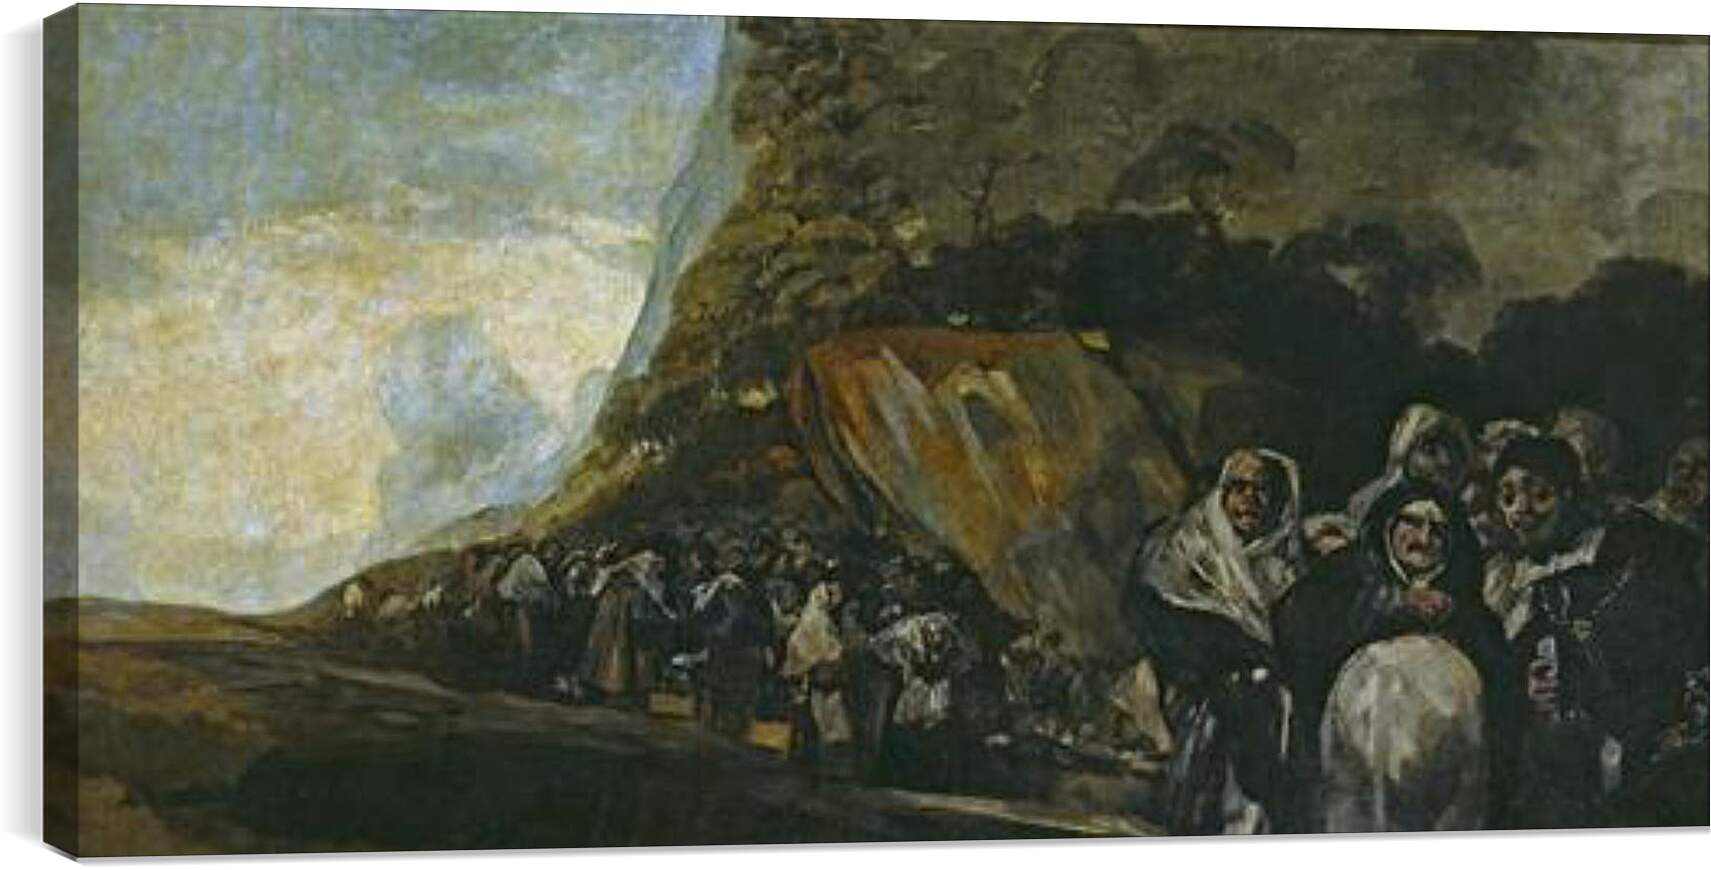 Постер и плакат - Pilgrimage to the Well of San Isidro. Франсиско Гойя